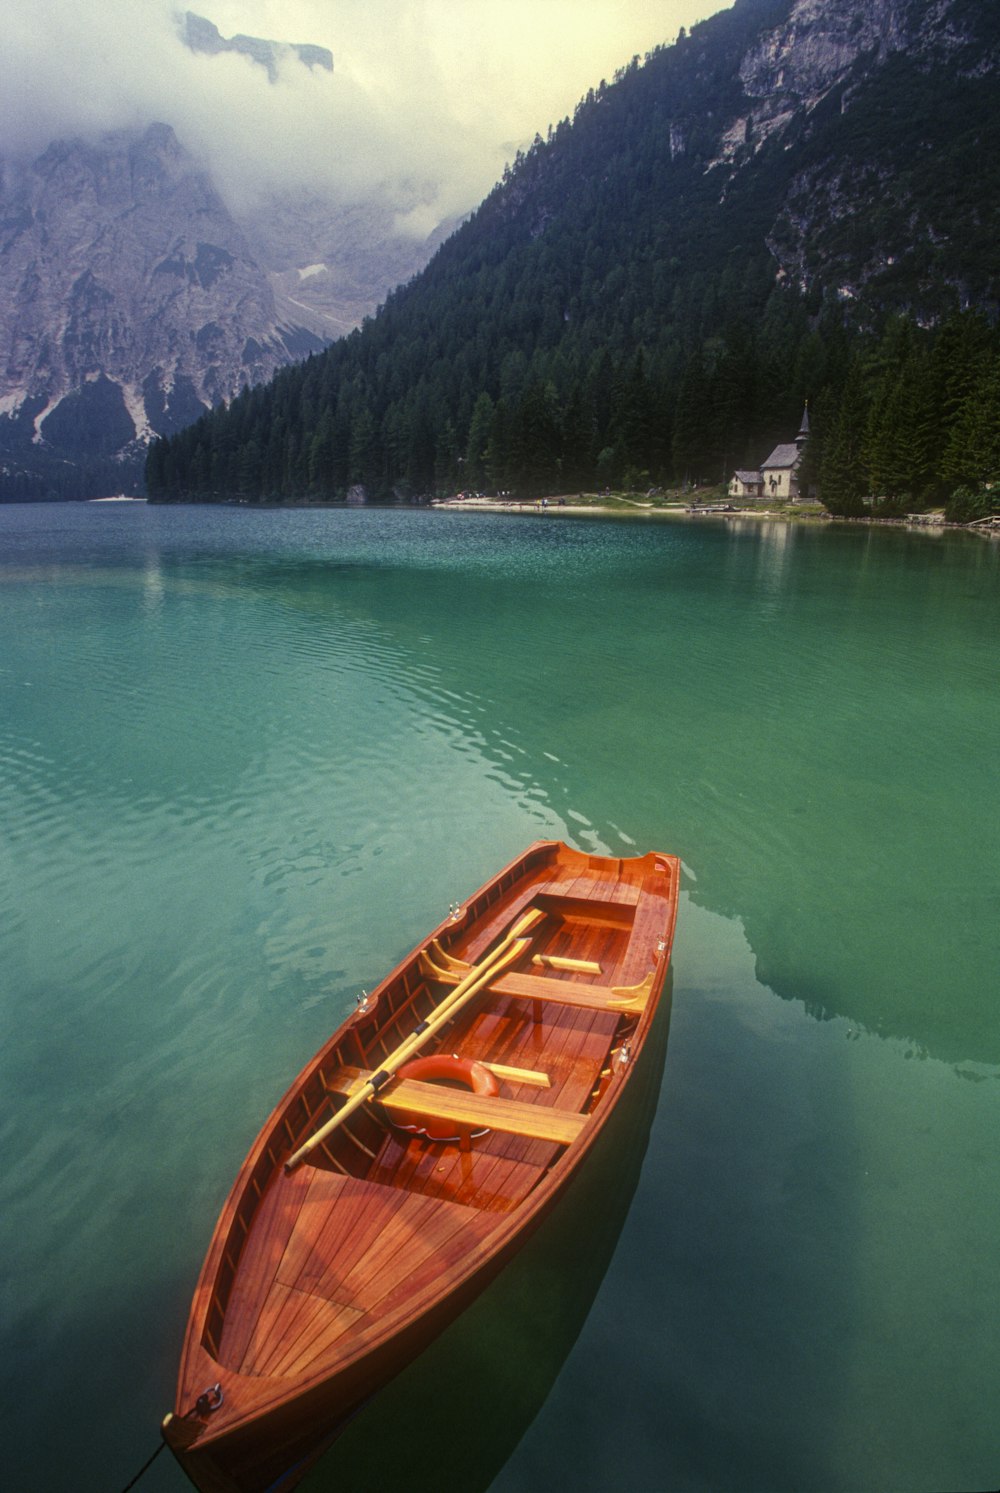 barco de madeira marrom no corpo de água durante o dia